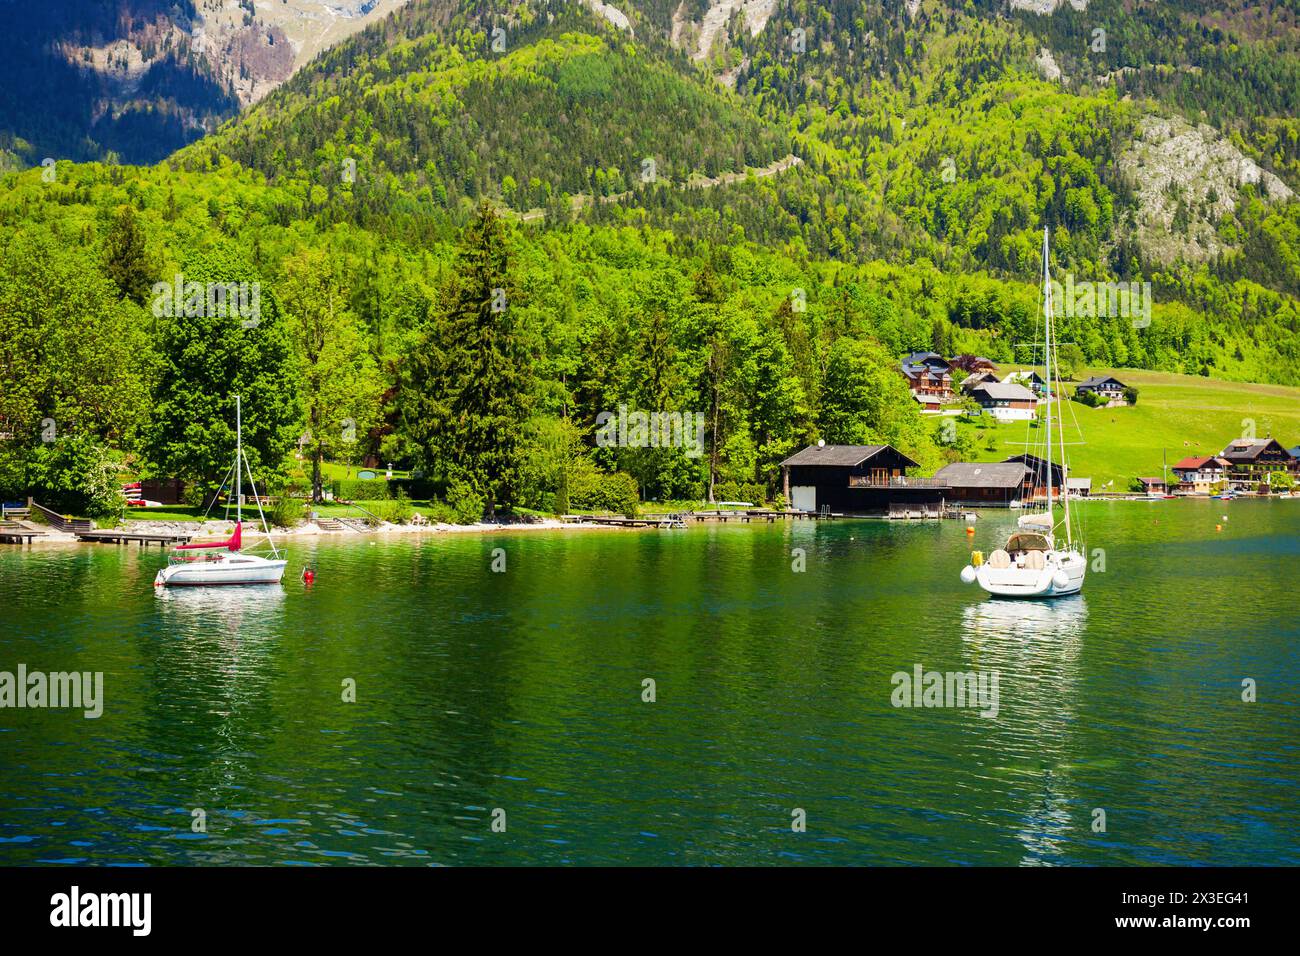 Le lac Wolfgangsee en Autriche. Wolfgangsee est un des lacs les plus connus dans la région du Salzkammergut resort région d'Autriche. Banque D'Images